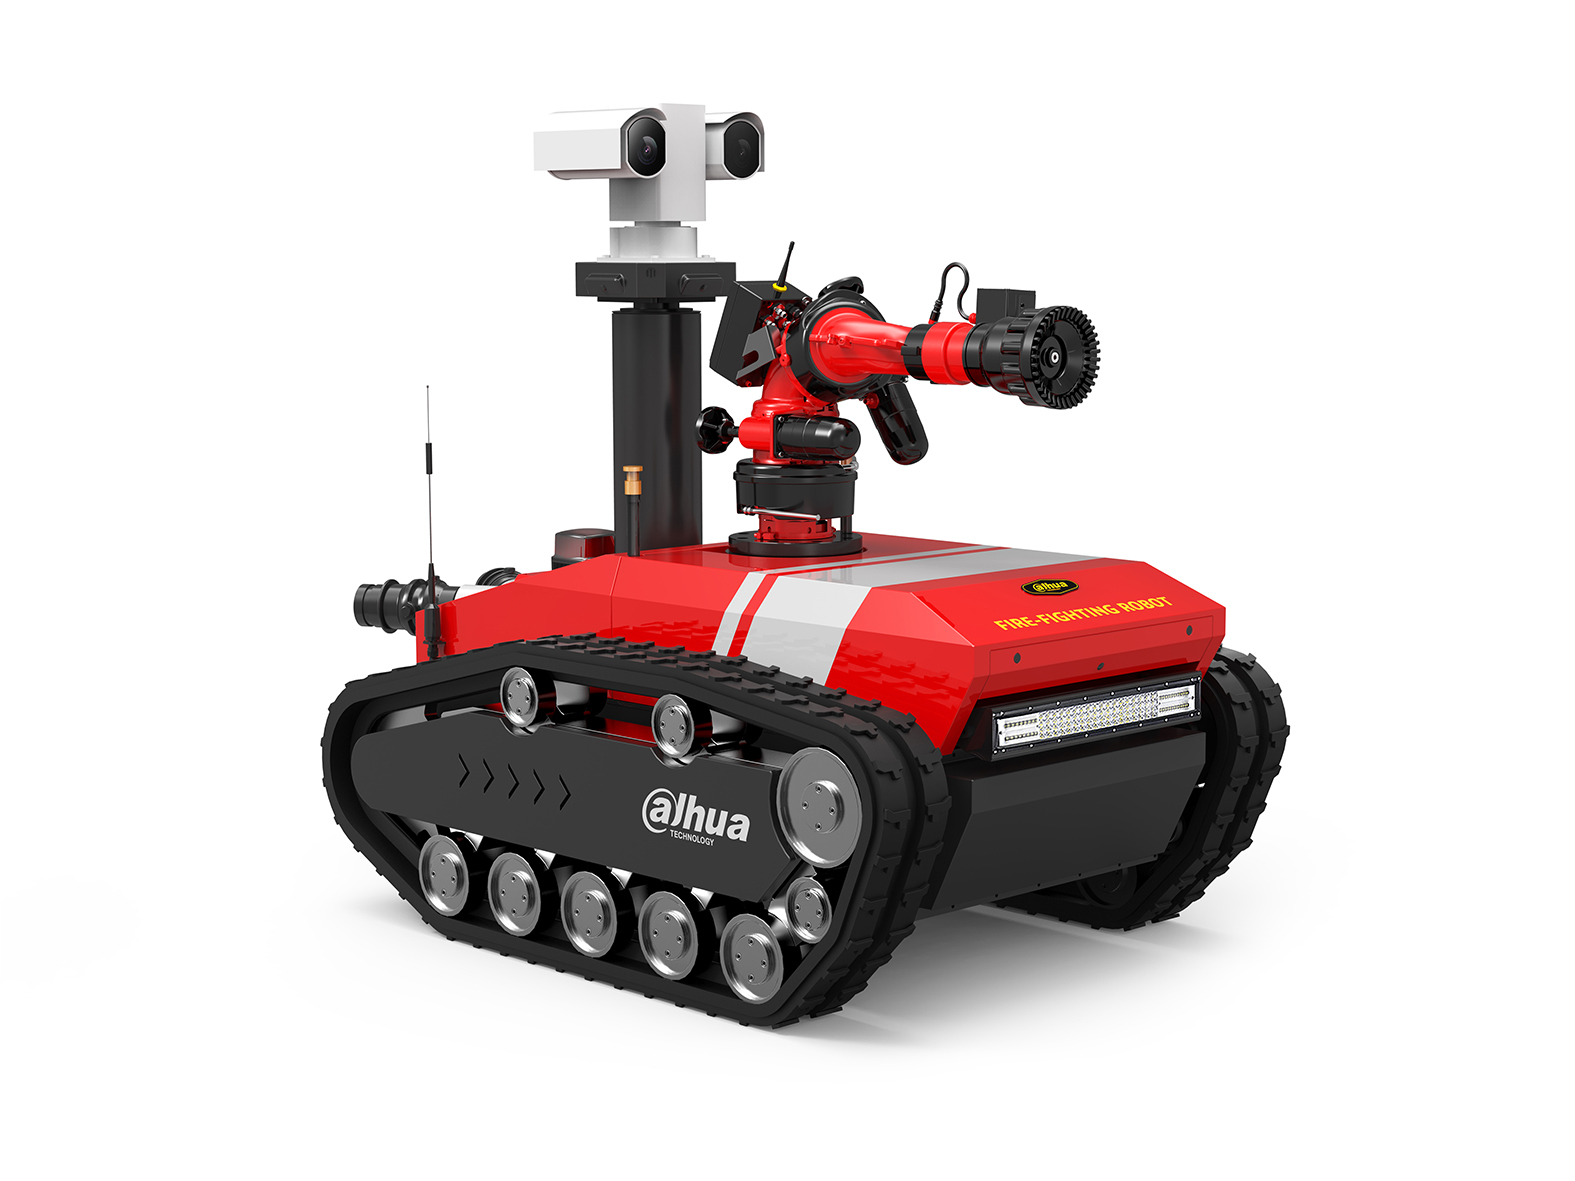 Dahua fire-fighting robot